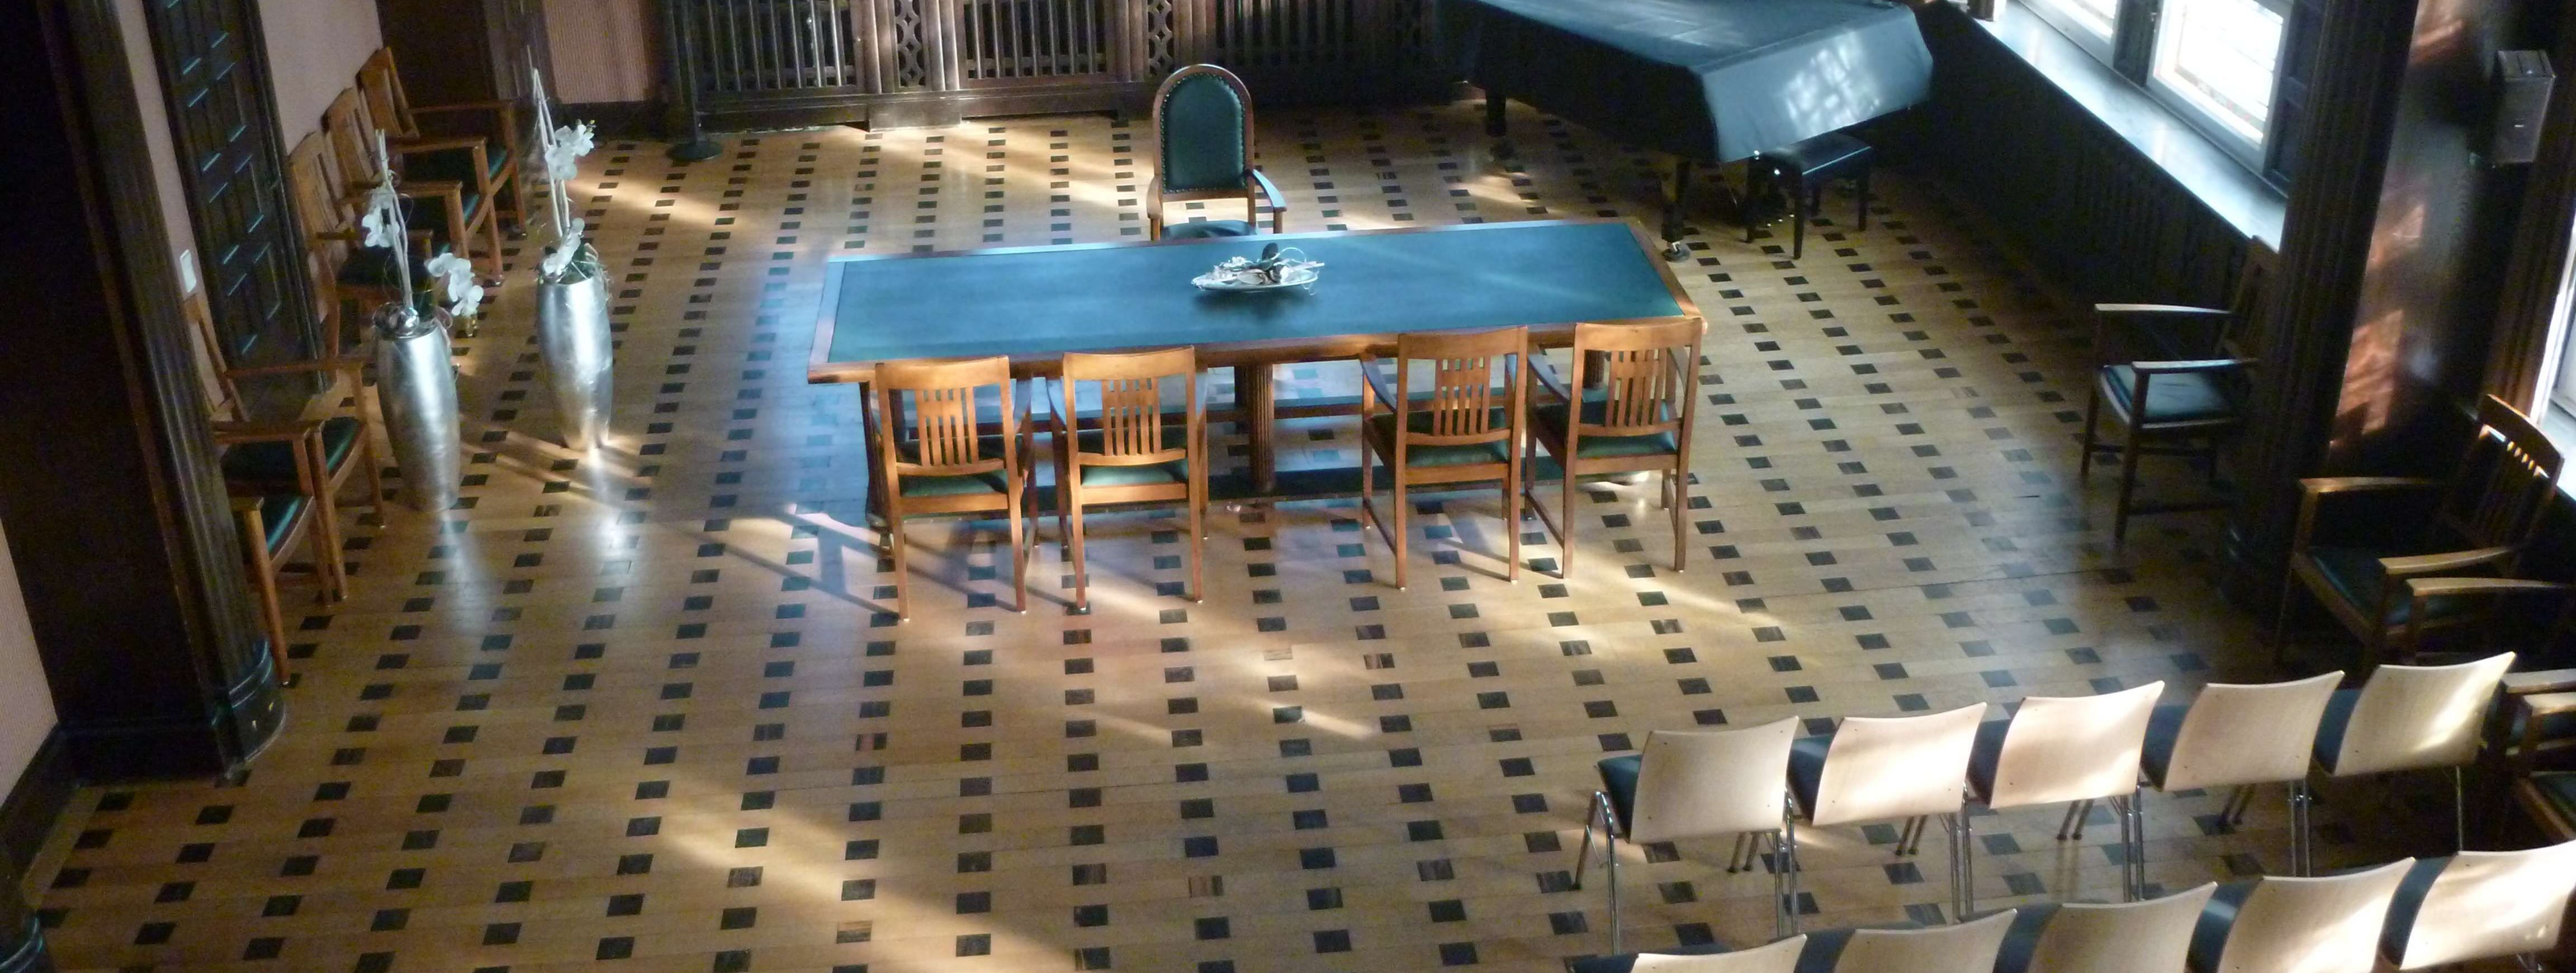 Historischer Ratssaal der Stadt Menden mit Bestuhlung, Blick von oben in den Saal, Buntglasfenster, Parkettboden, ein grüner Tisch steht quer, davor 4 Stühle. 